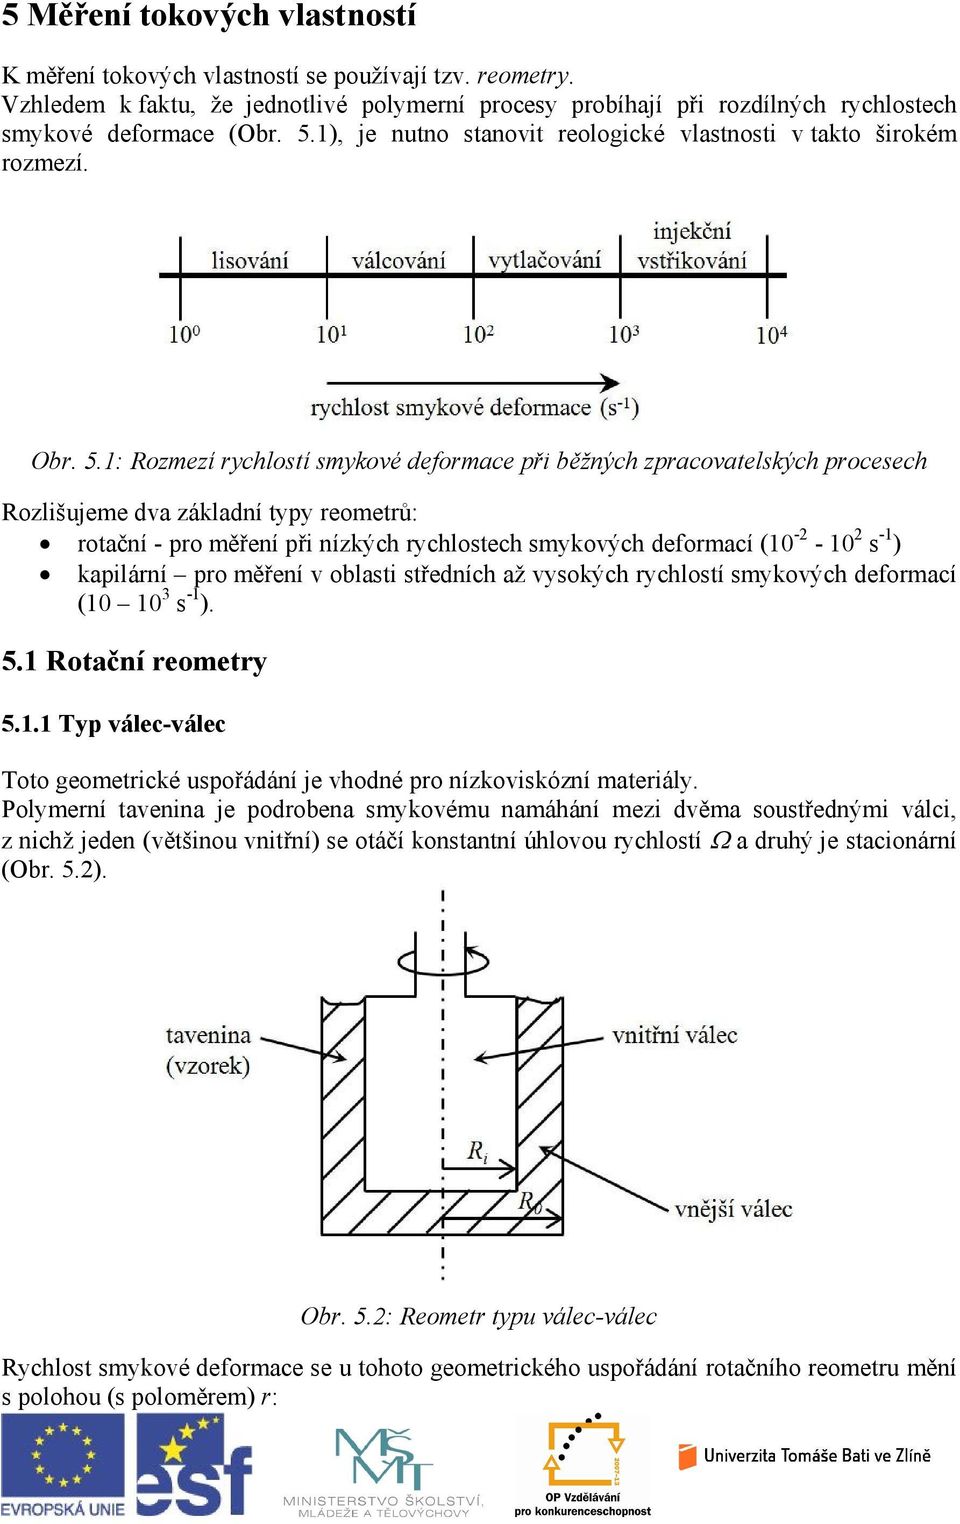 1: Rozmezí rychlostí smykové deformace při běžných zpracovatelých procesech Rozlišujeme dva základní typy reometrů: rotační - pro měření při nízkých rychlostech smykových deformací (10 - - 10 s -1 )